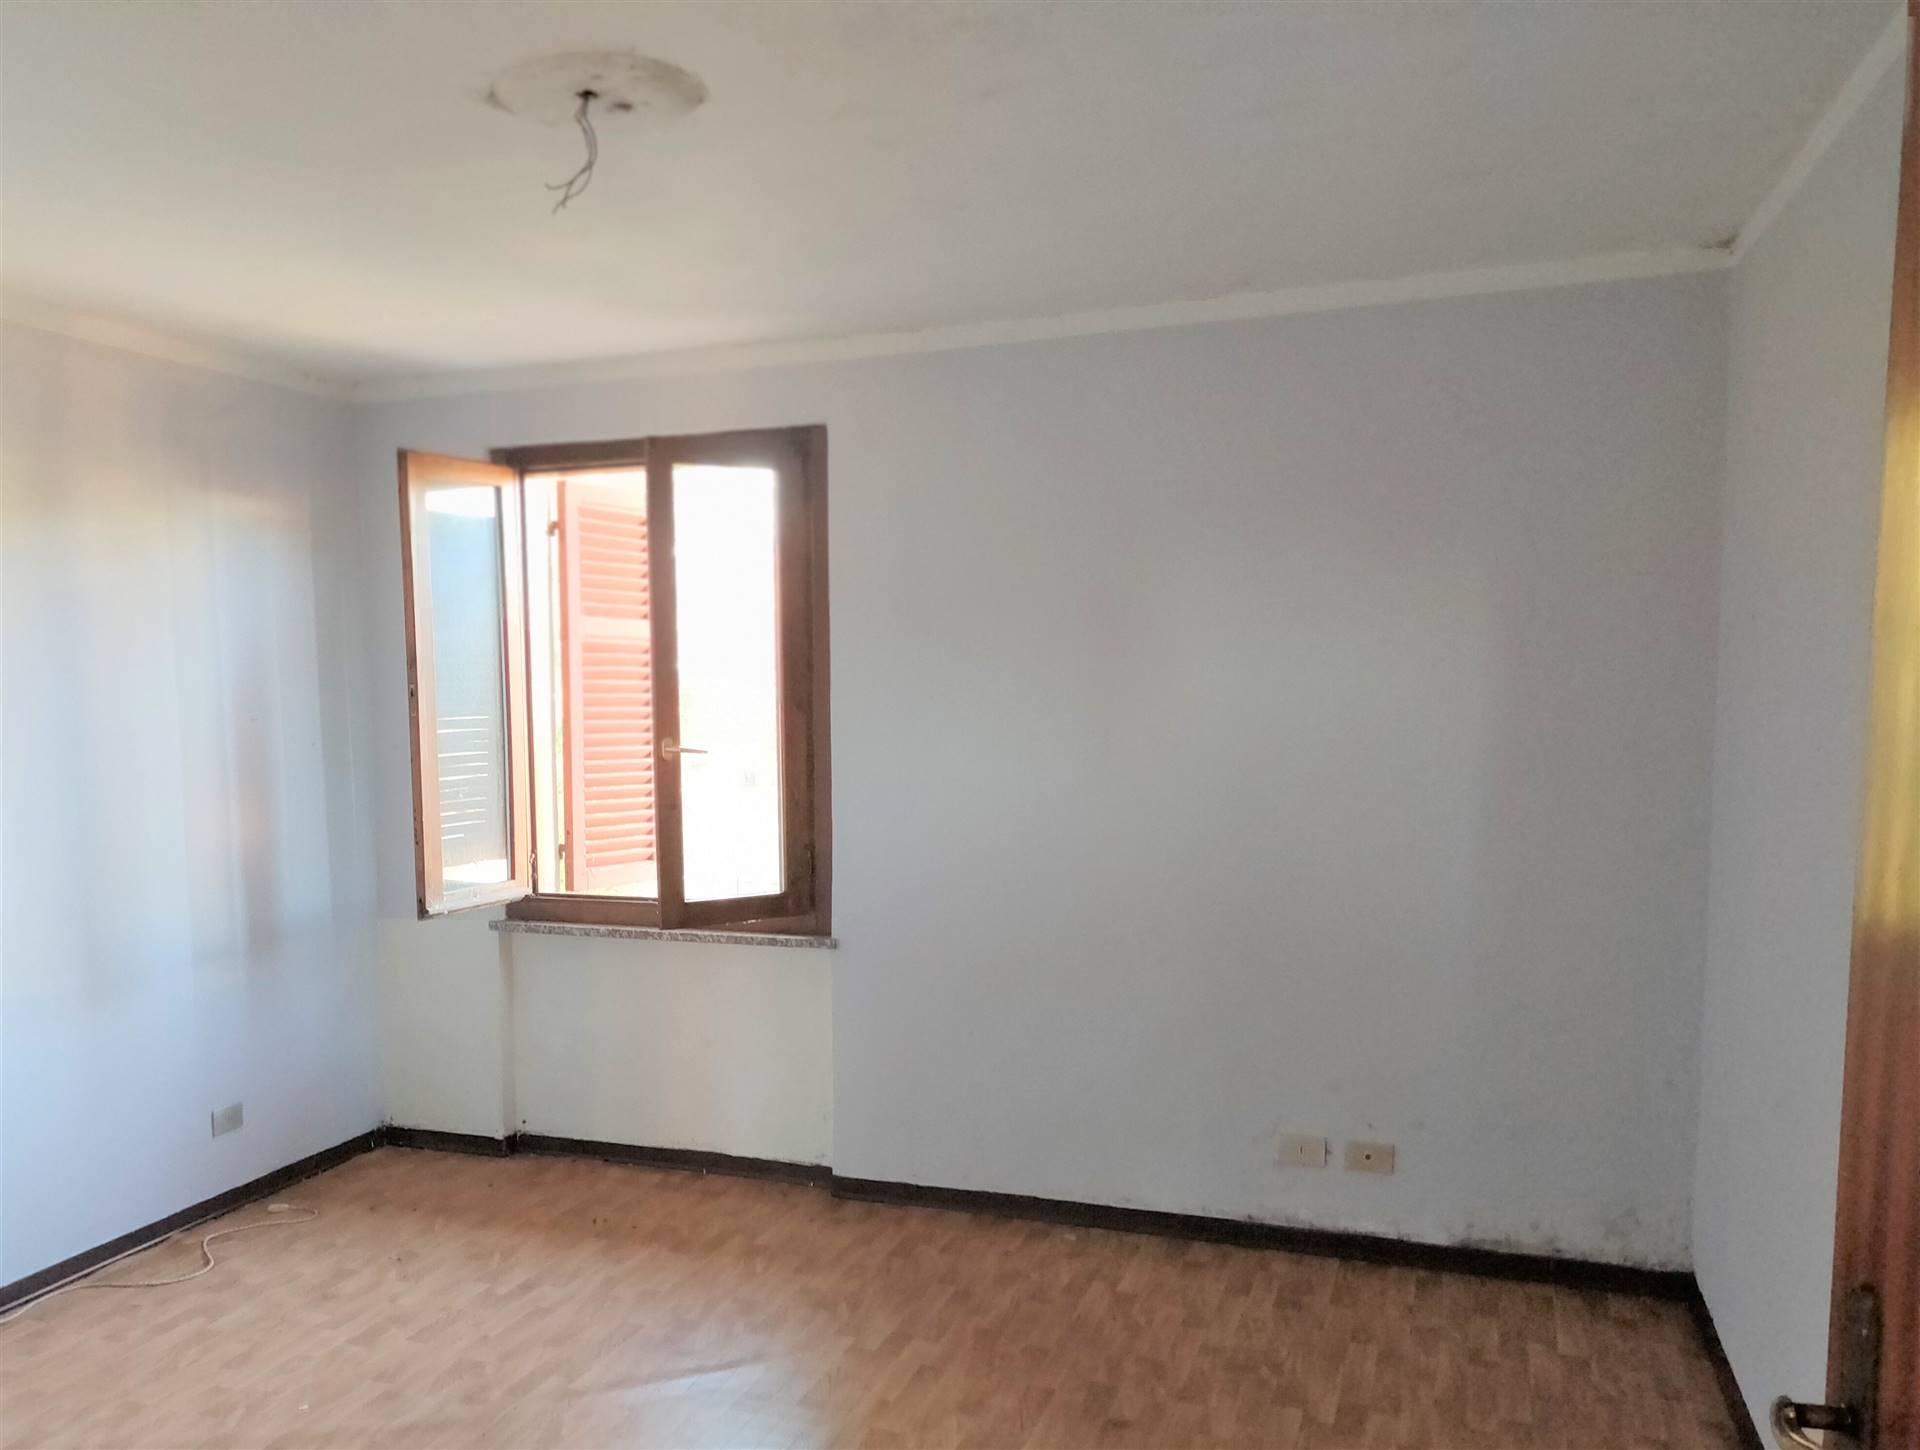 Appartamento in vendita a Gaglianico, 3 locali, prezzo € 25.000 | PortaleAgenzieImmobiliari.it